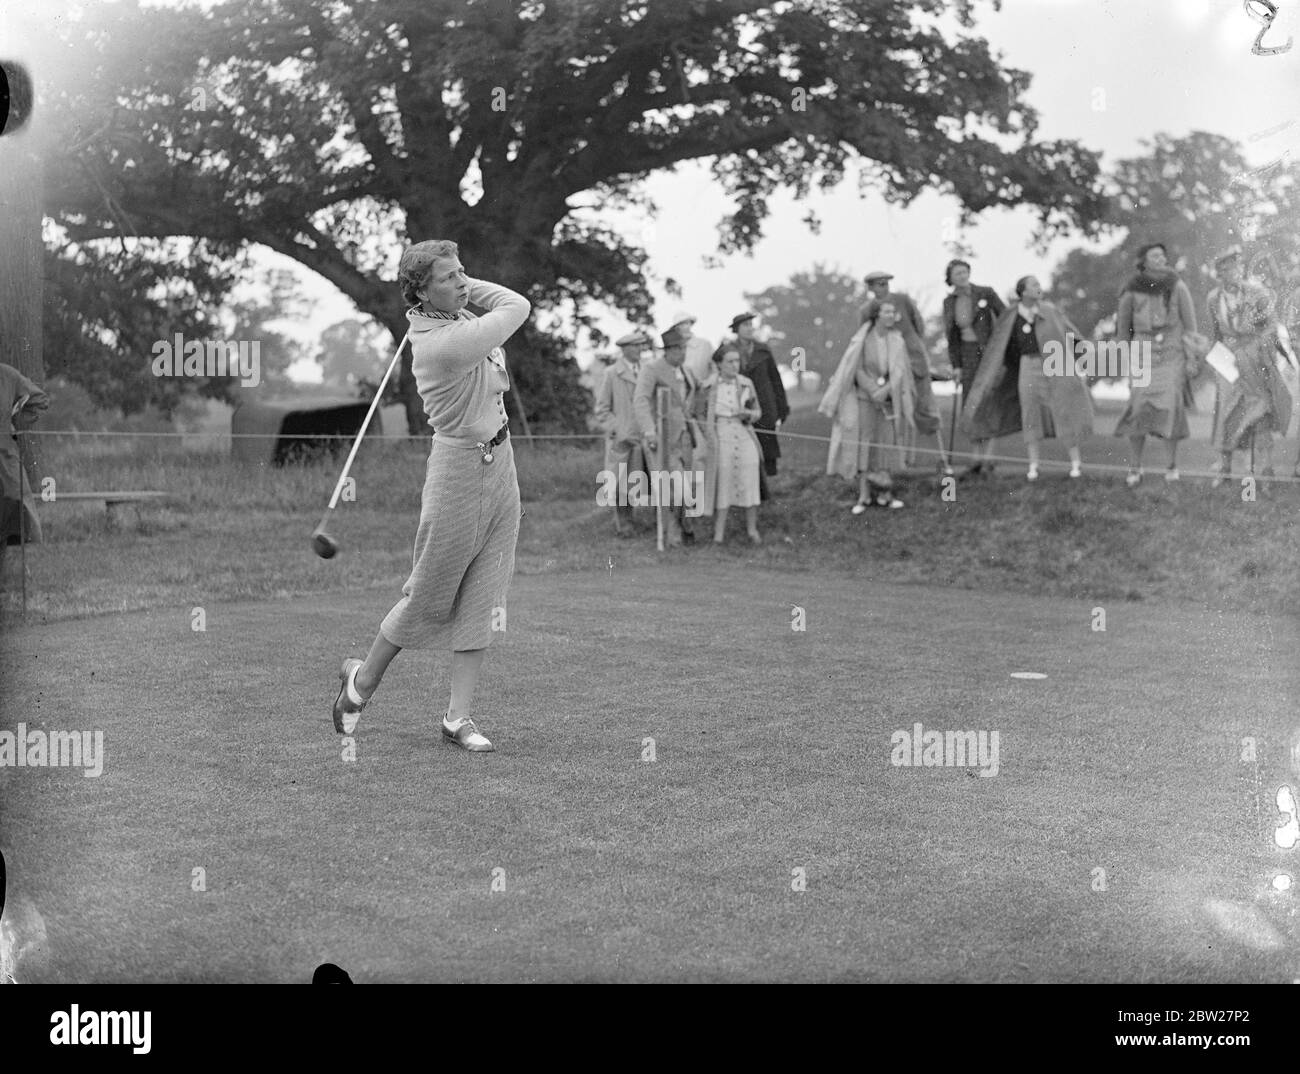 Miss K. Garnham fährt vom dritten Abschlag. Sie spielt in einem der Vierer mit Henry Cotton gegen J. J. F. Pennick und L. G. Crawley. Sie spielen im Krönungsspiel der englischen Golf Union, in dem 20 führende Amateure gegen 10 Golferinnen und 10 Profis spielen. Der Wettbewerb findet im Moor Park Club, Rickmansworth statt und die Proceedings werden dem King George V National Memorial Fund gewidmet sein. 18 Juni 1937 Stockfoto